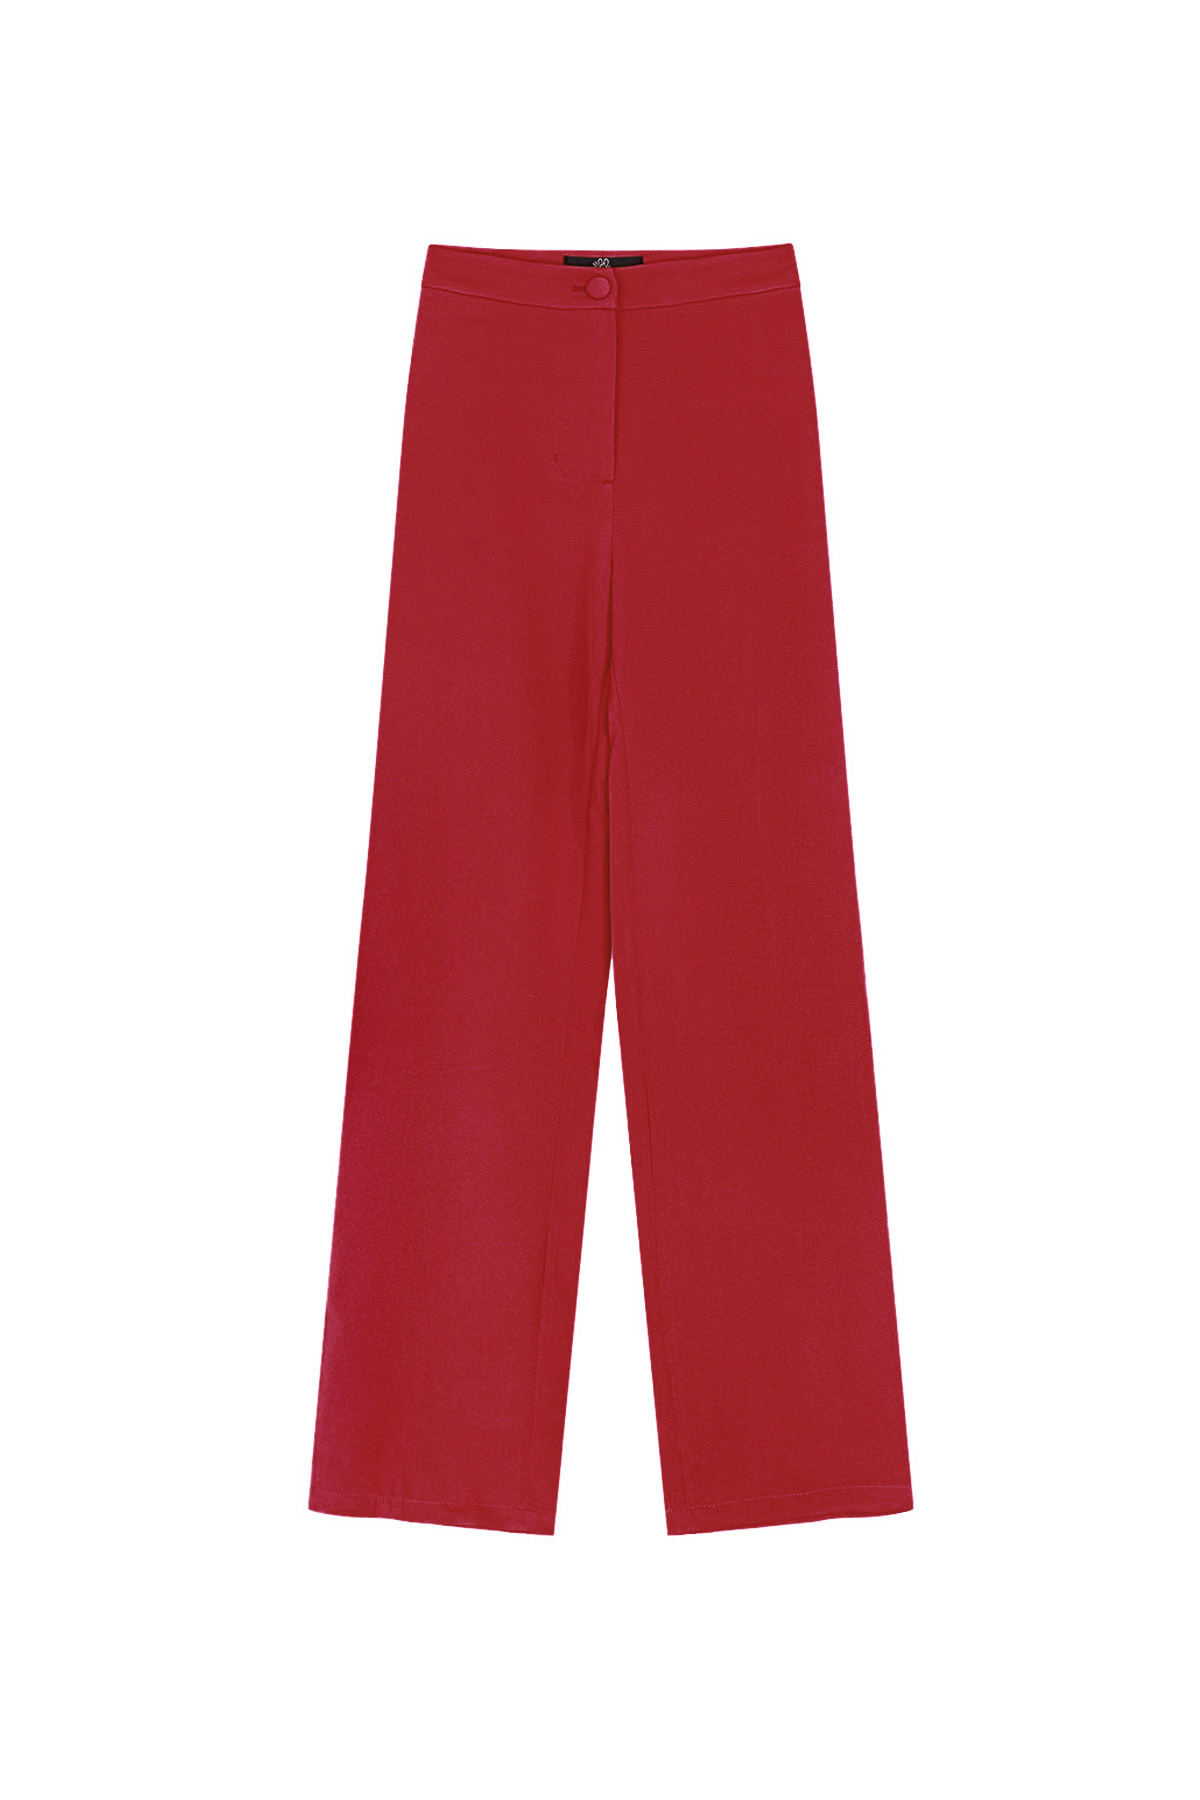 Pantalon basique uni - rouge h5 